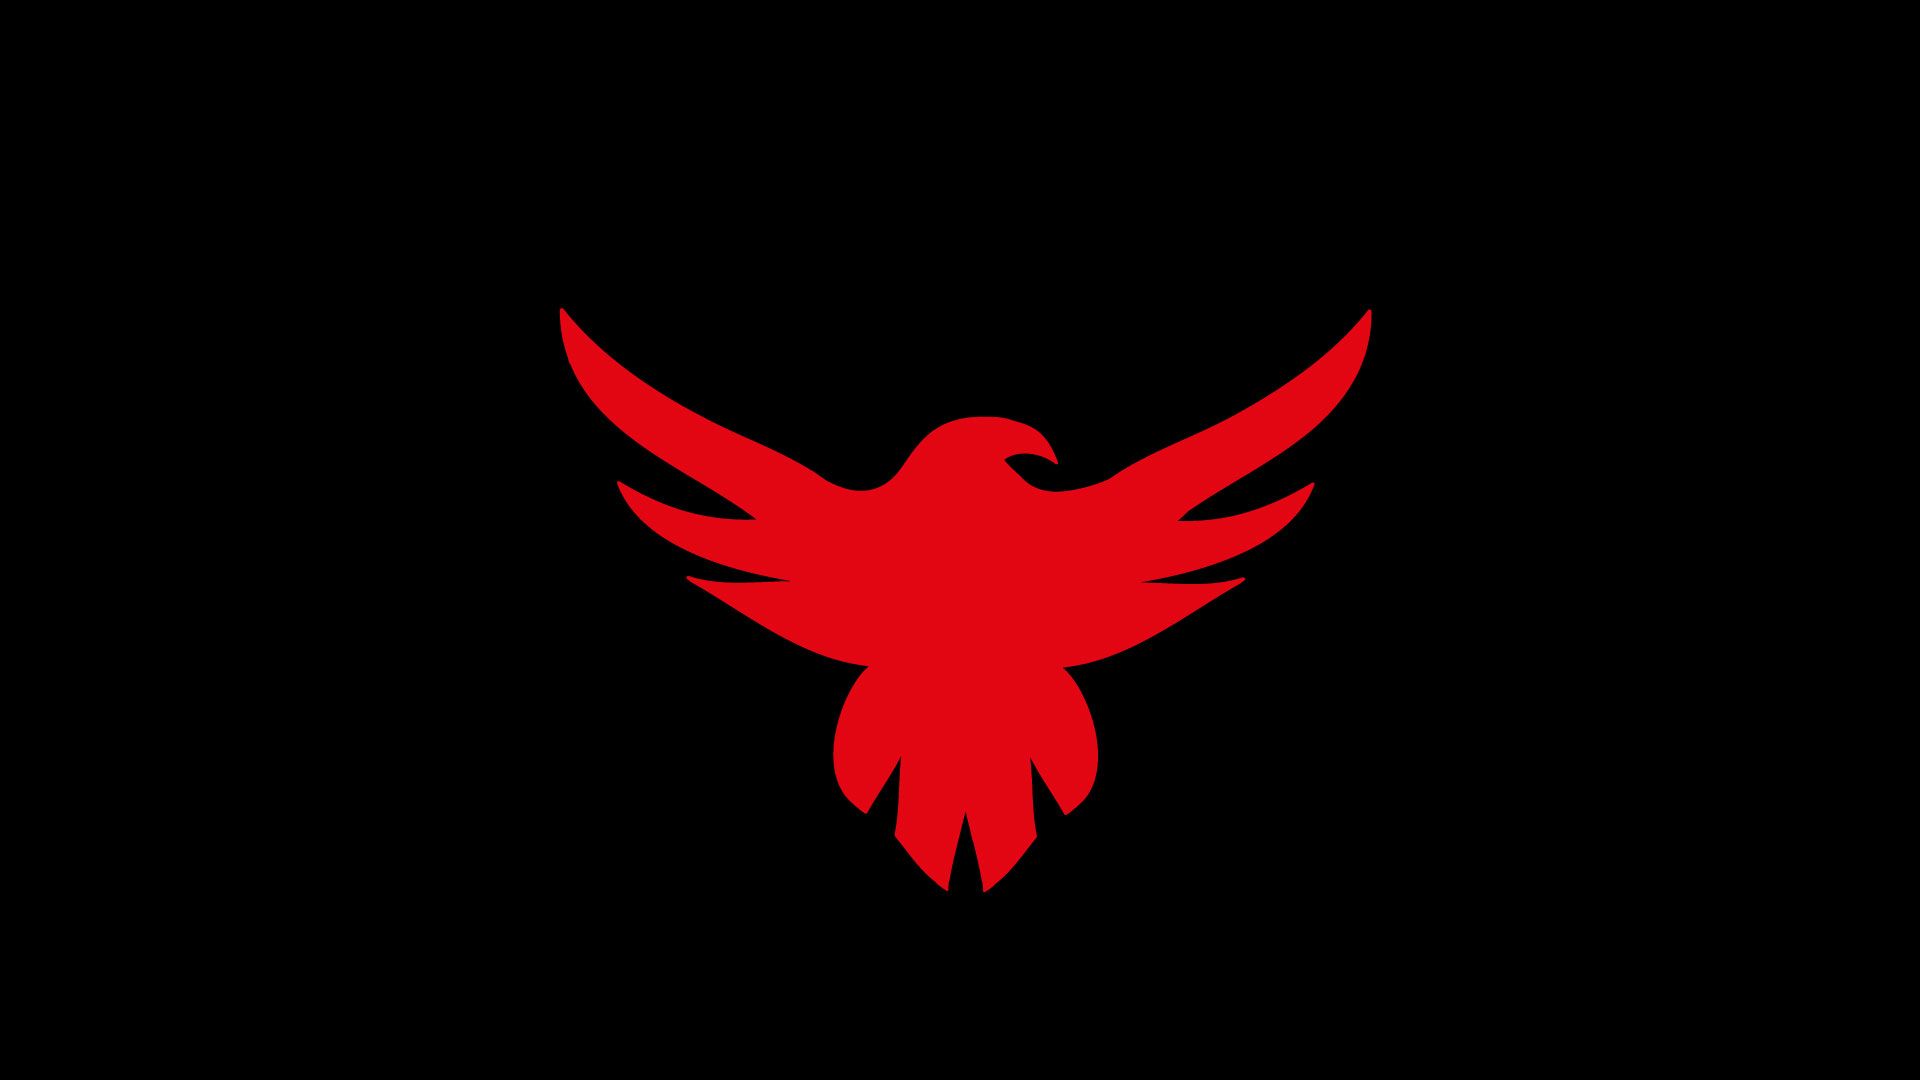 Eagle Emblem Wallpaper. Fire Emblem